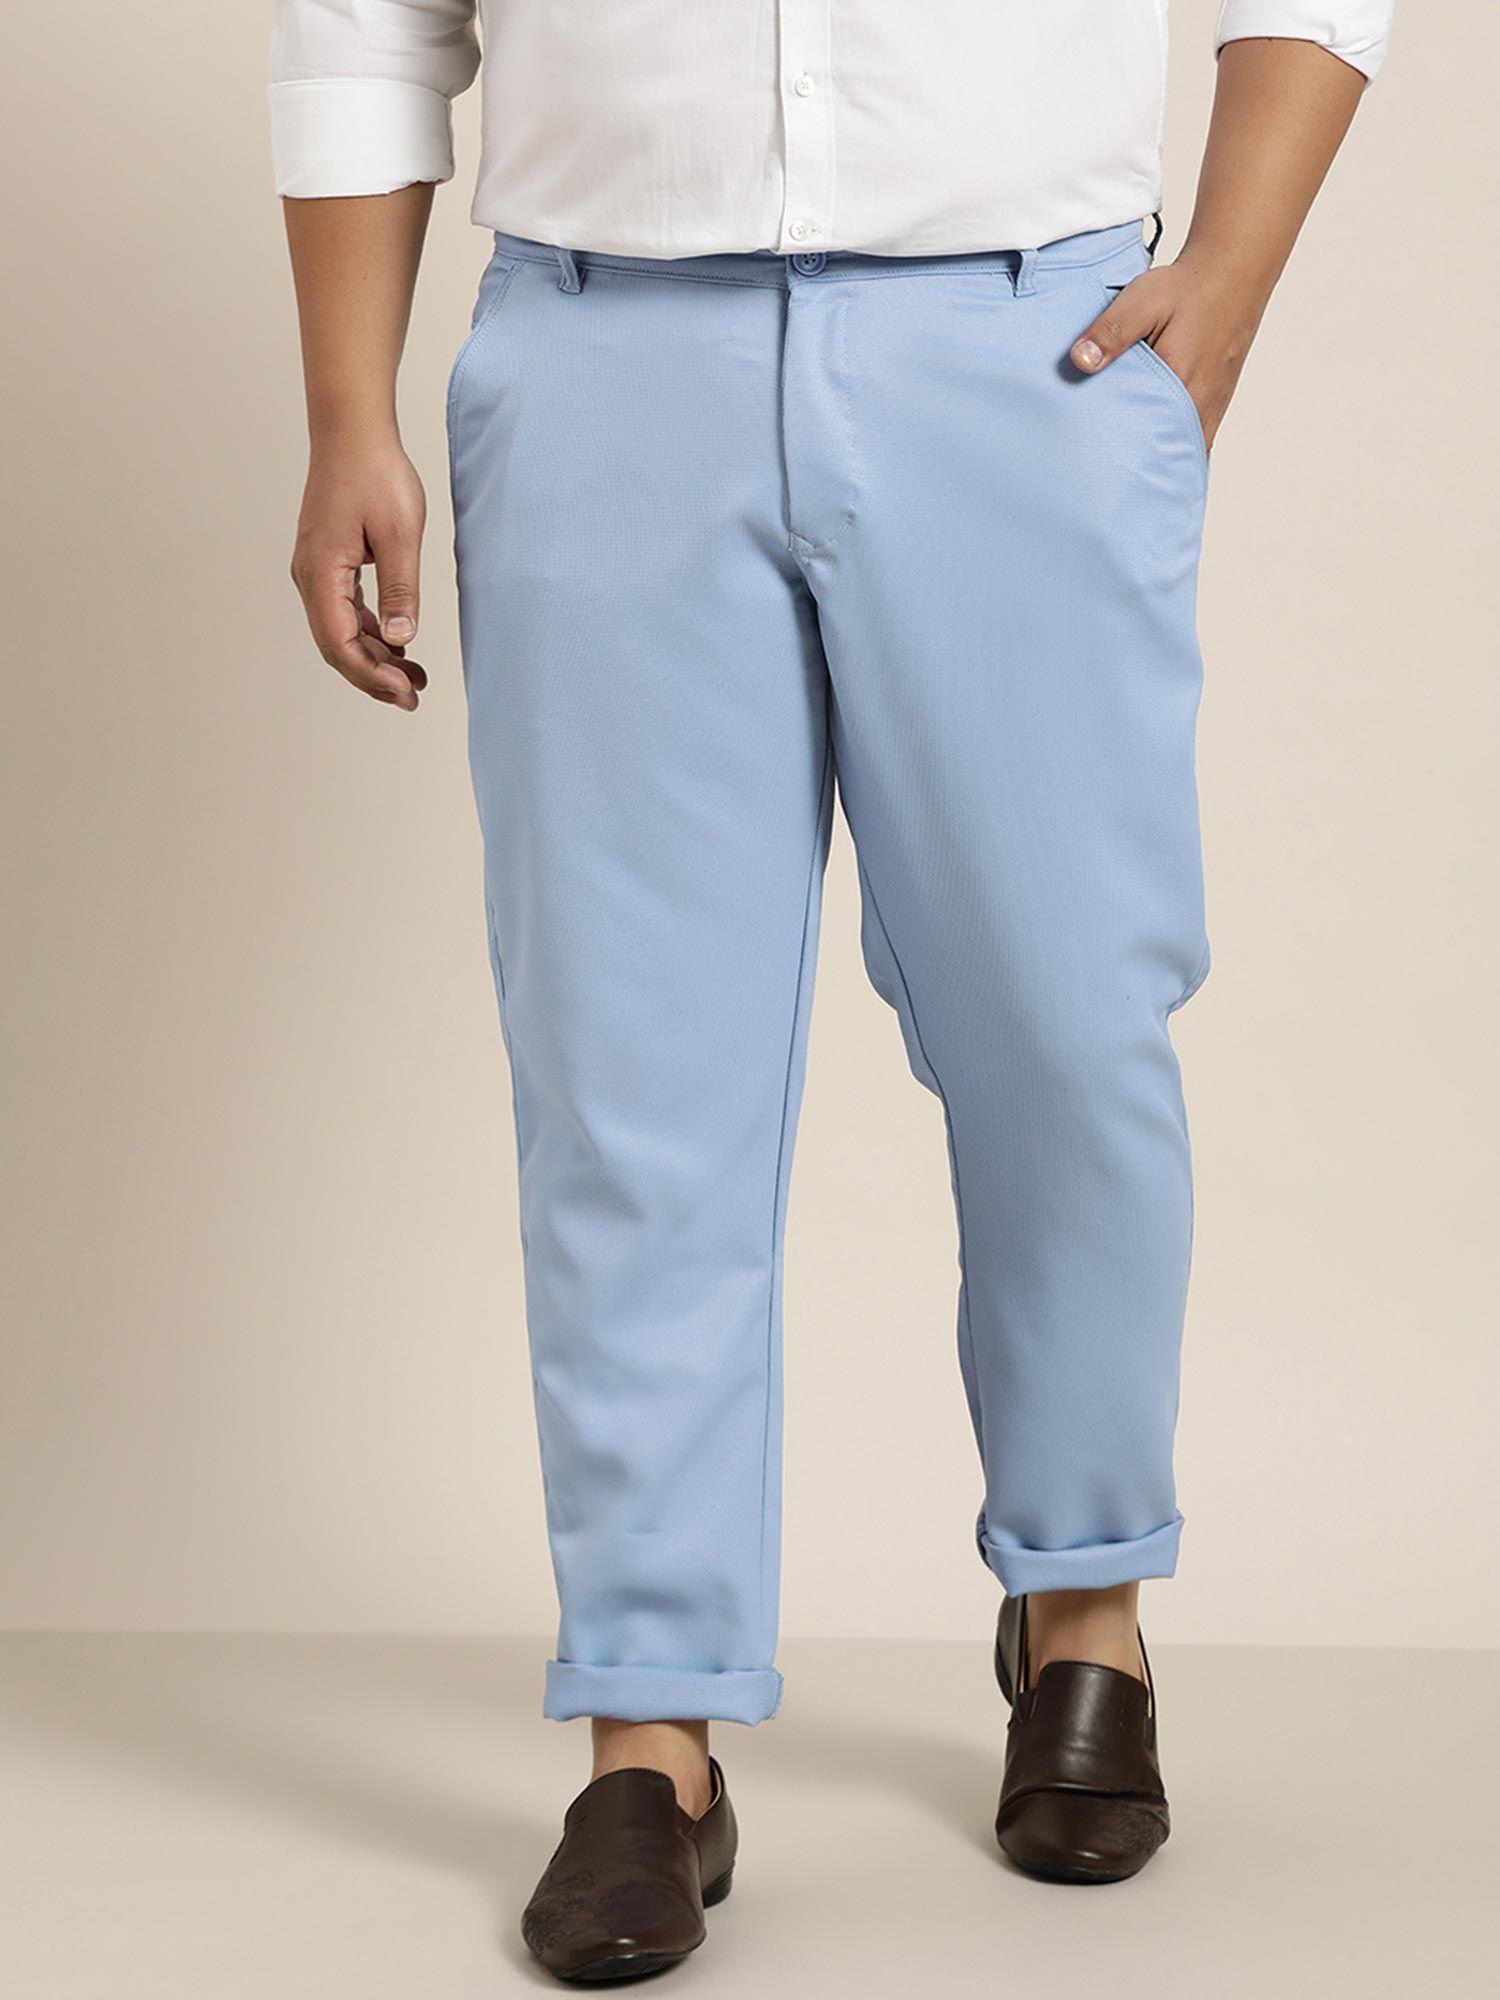 men cotton blend blue woven design trousers